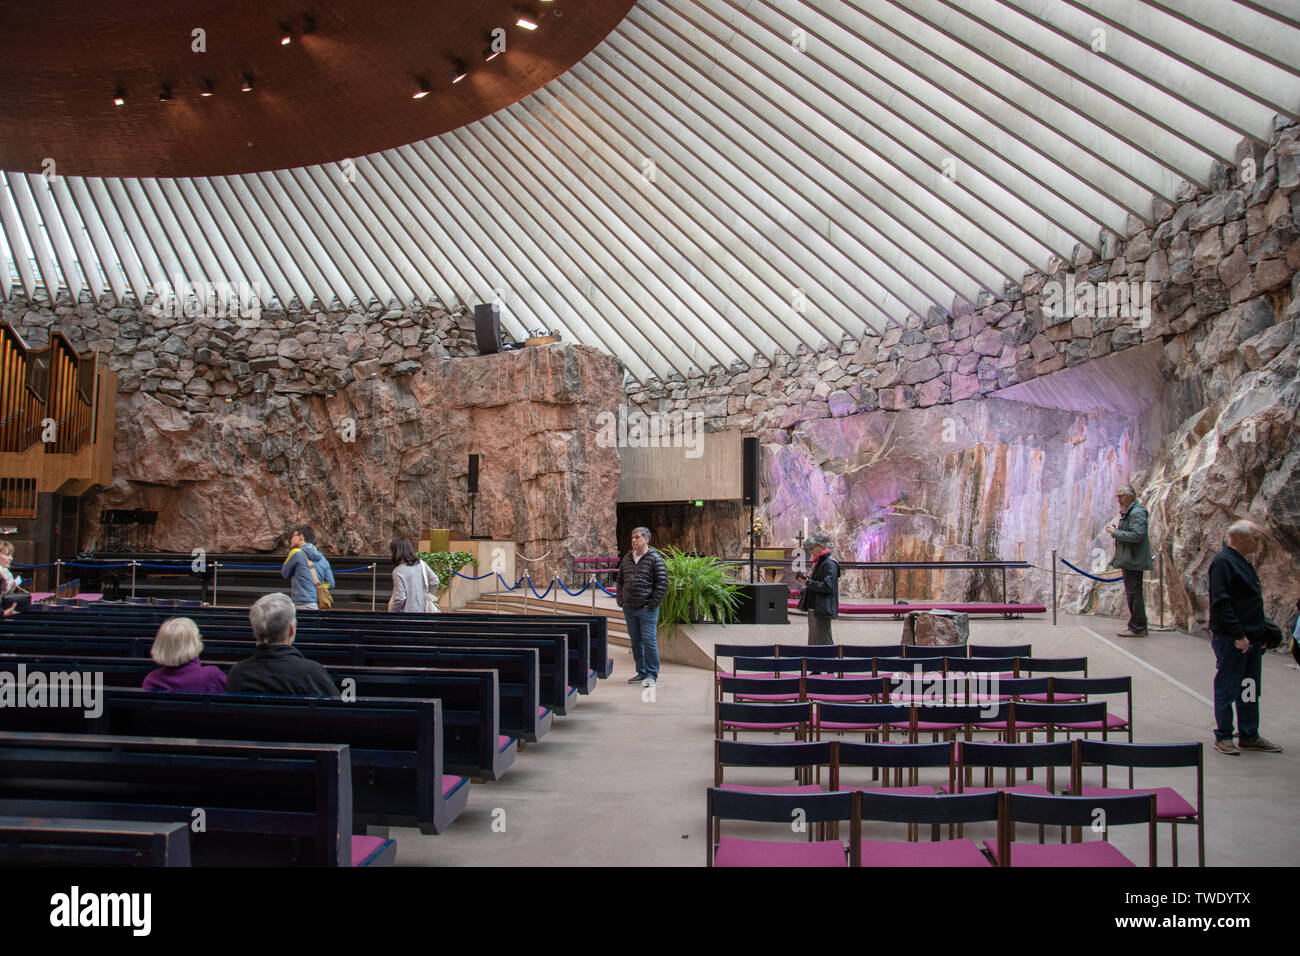 L'église Temppeliaukio est une église luthérienne située dans le quartier de Tööölö à Helsinki, en Finlande. Banque D'Images